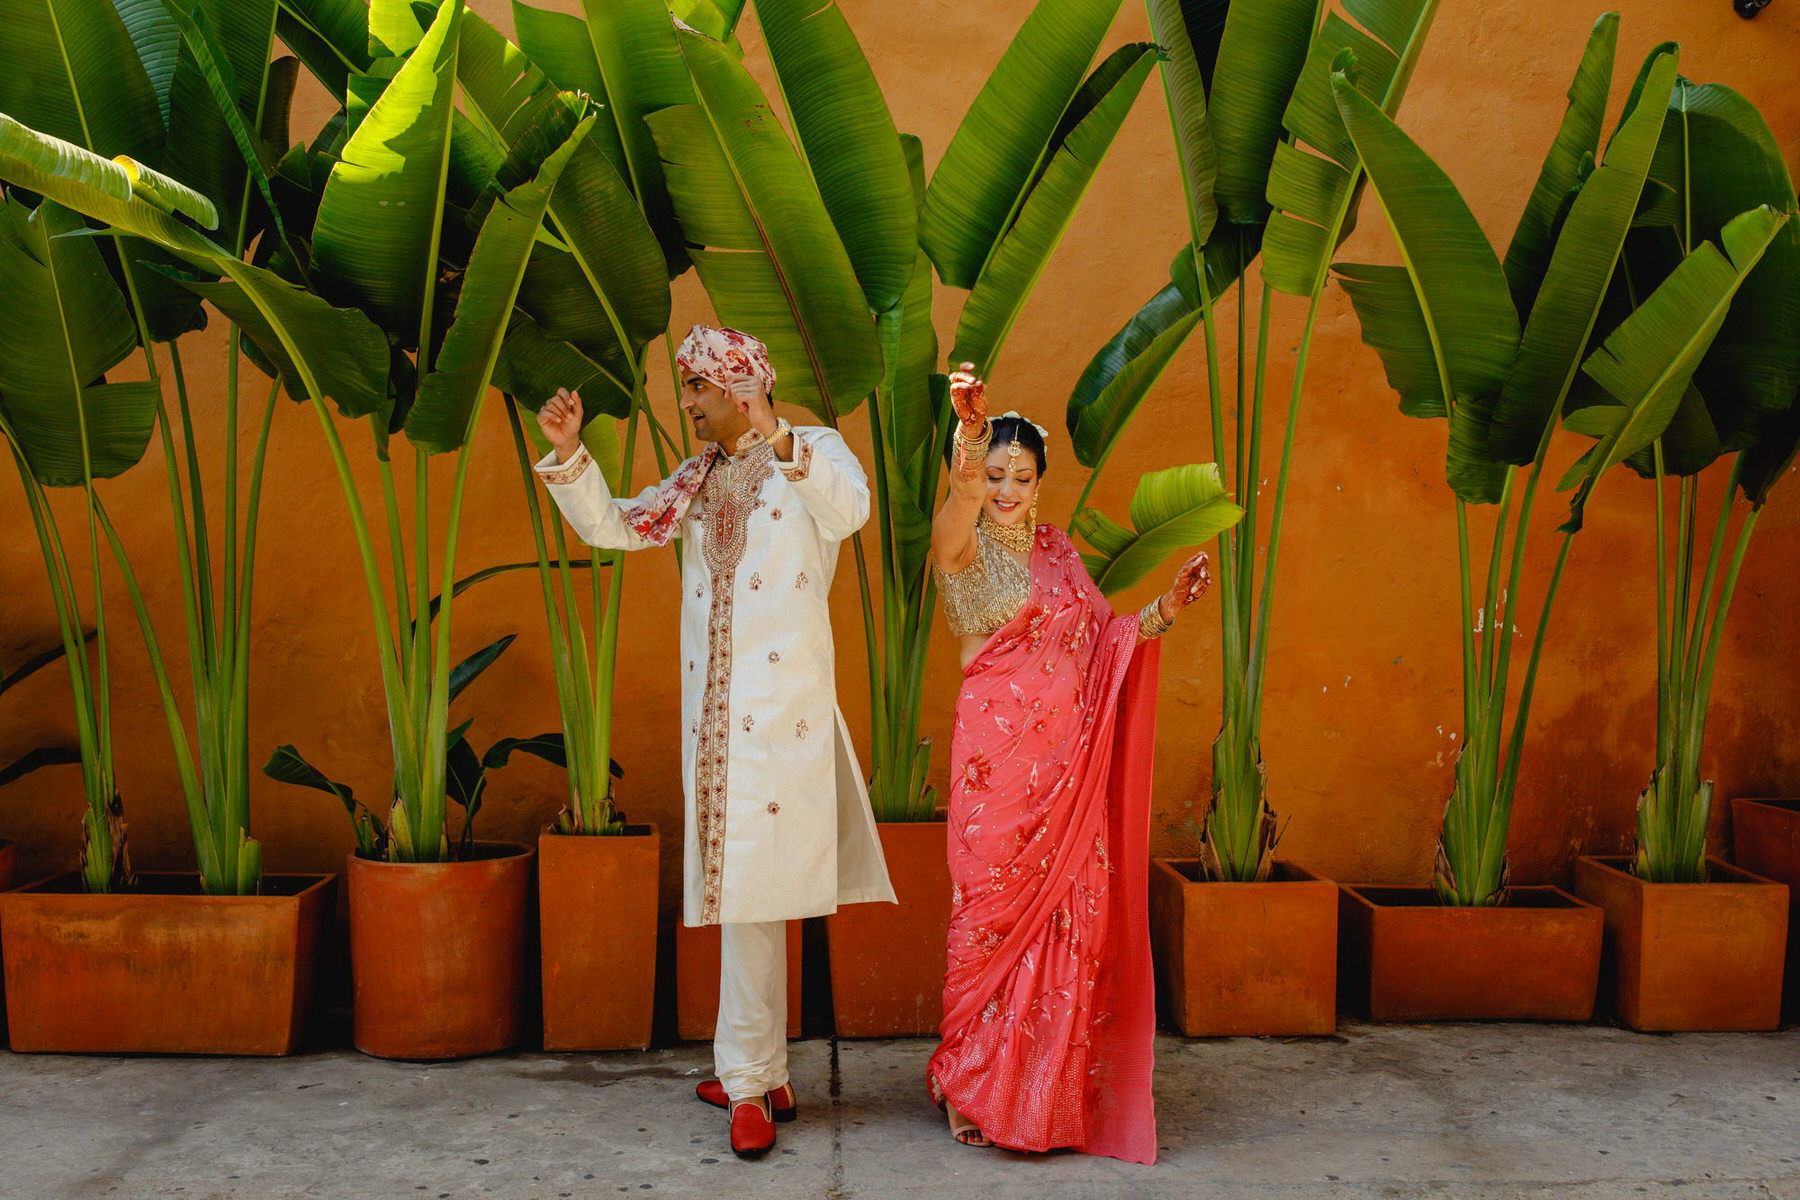 Indian wedding in Cartagena de Indias, Colombia. 